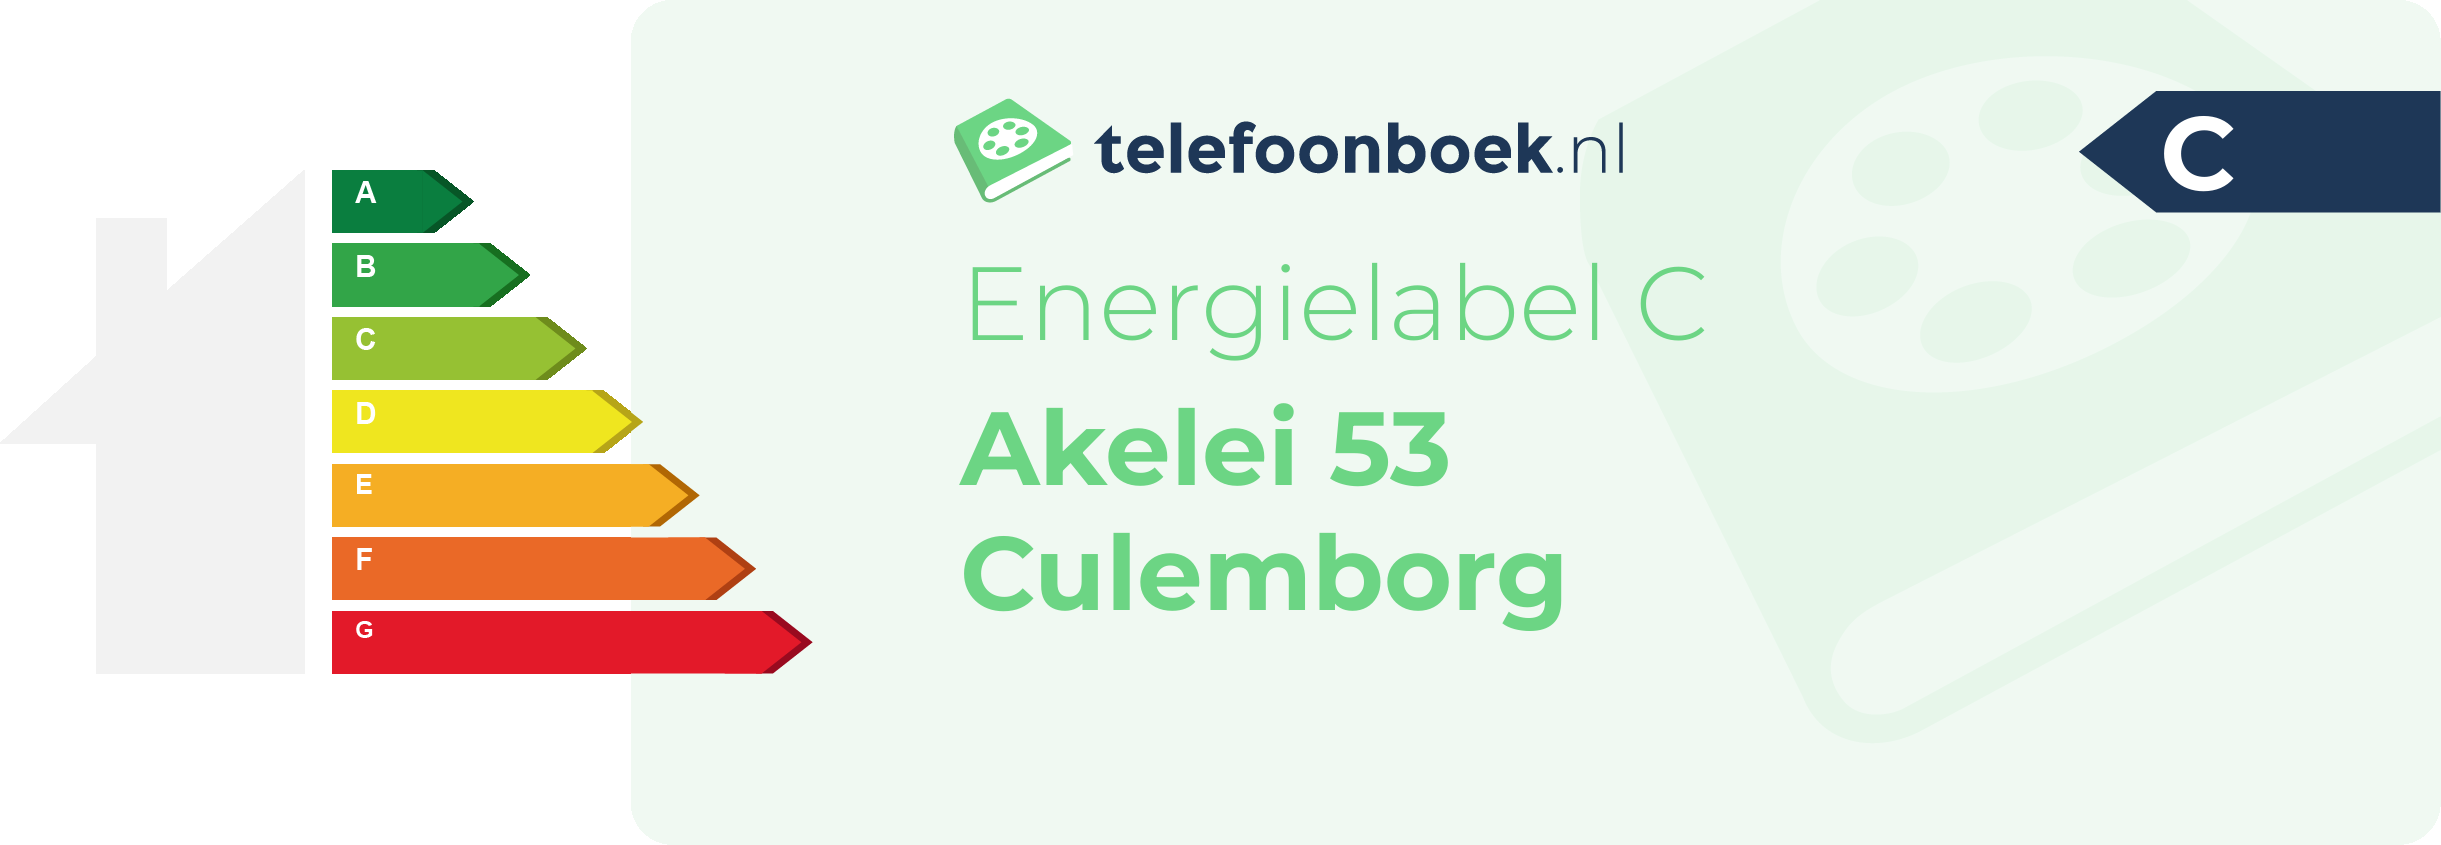 Energielabel Akelei 53 Culemborg